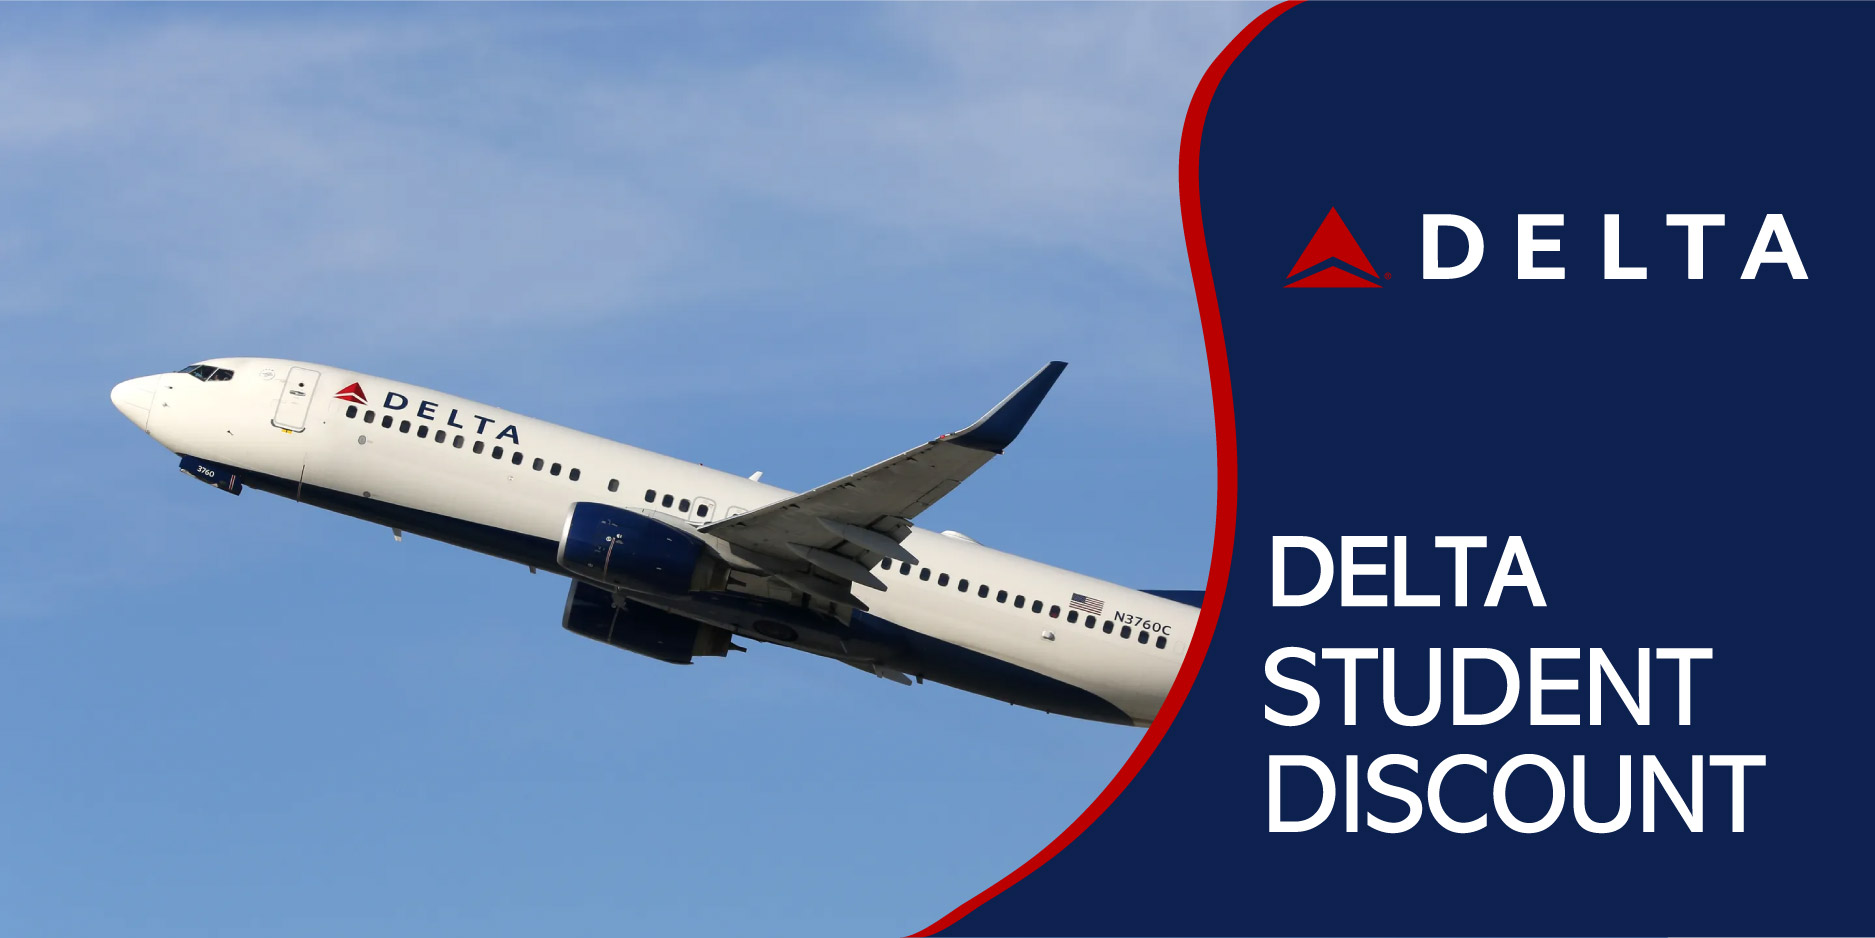 Delta Student Discount